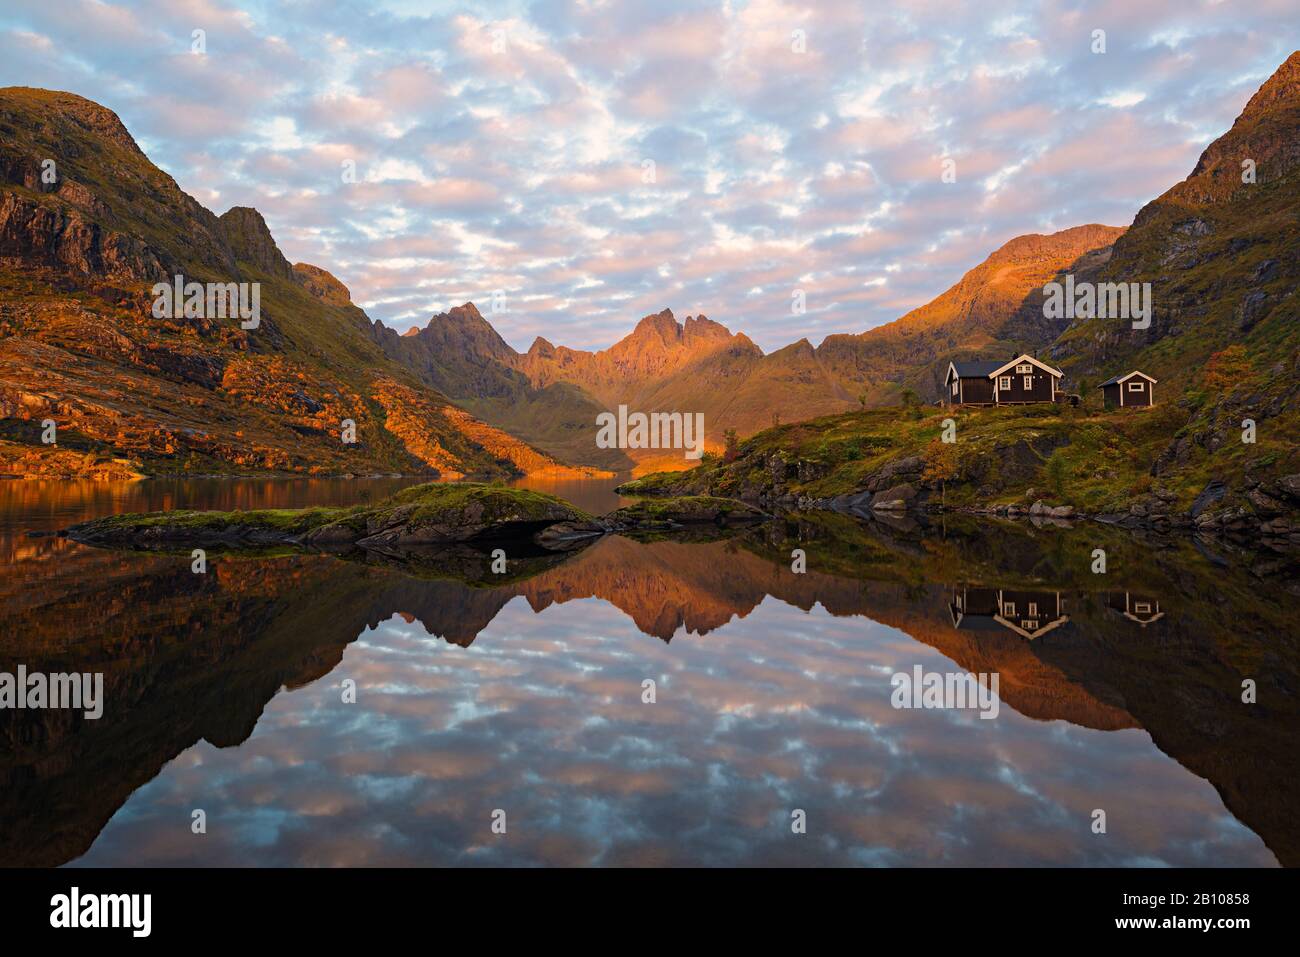 Bergrücken mit Alpenglow, der sich in der Morgenlampe im See widerspiegelt, Avatnet, Moskenesoya, Lofoten, Norwegen Stockfoto